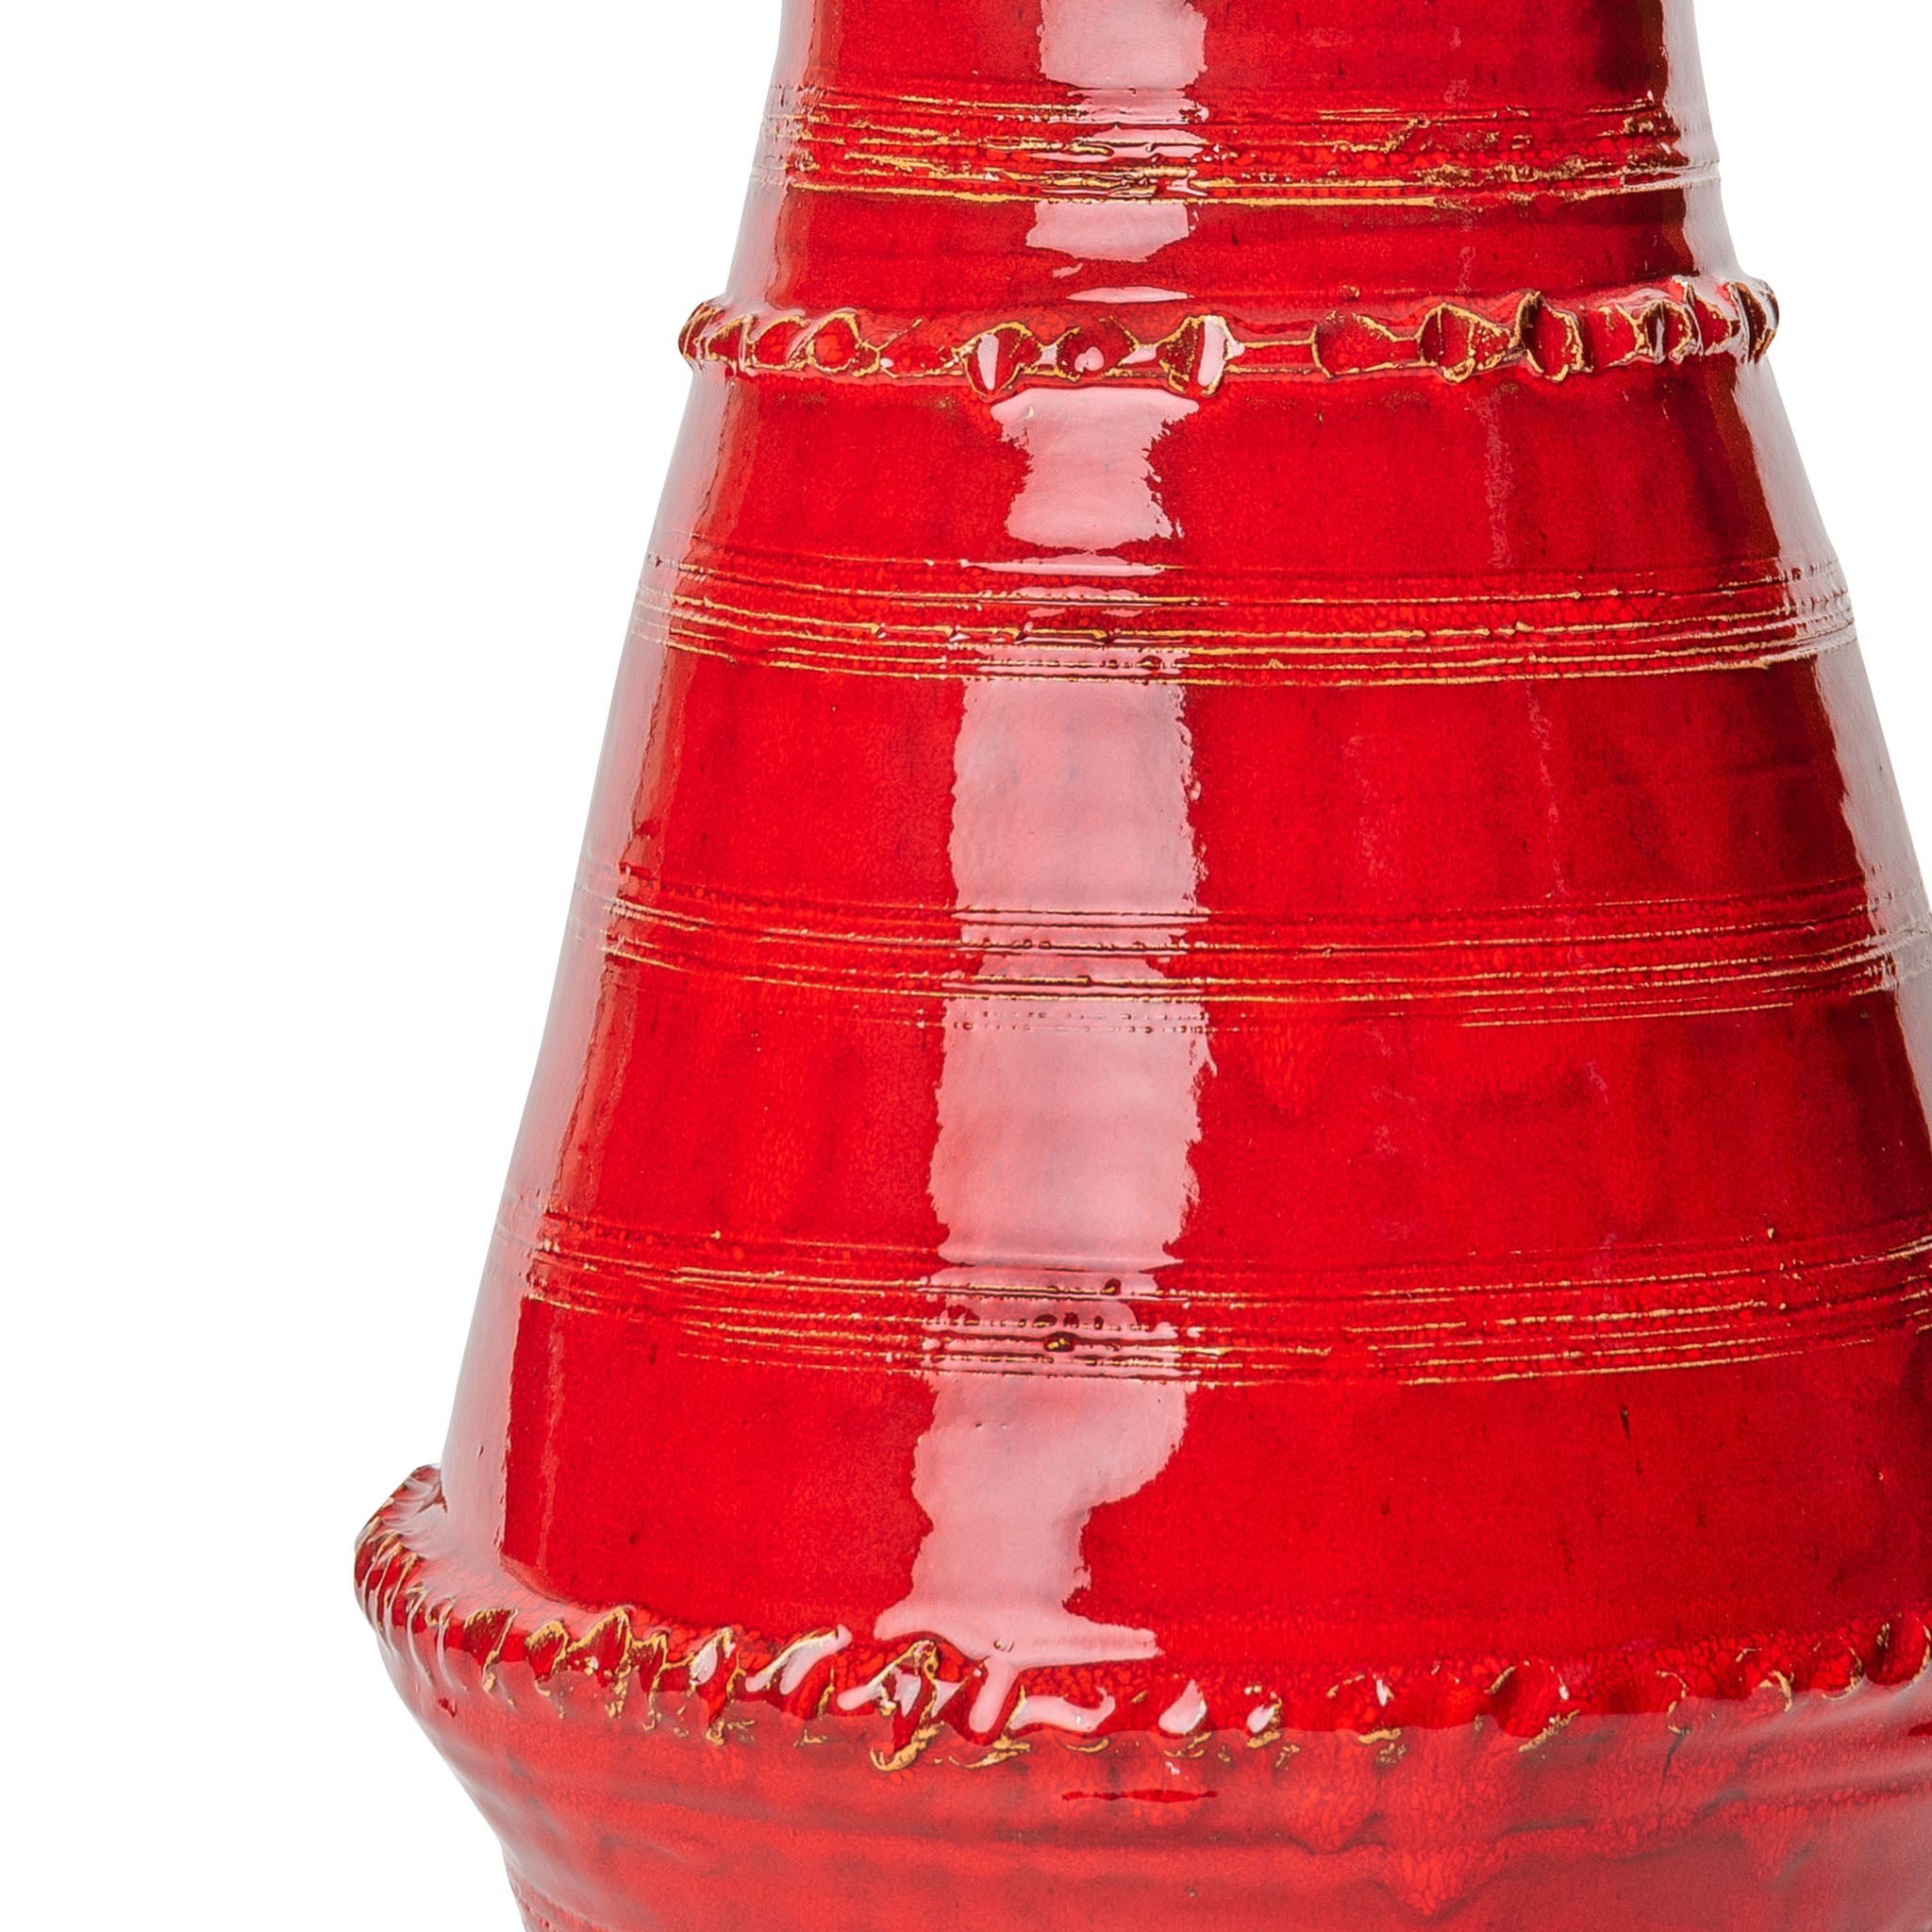 Red Ribbed Vase Ceramic Lamp Base